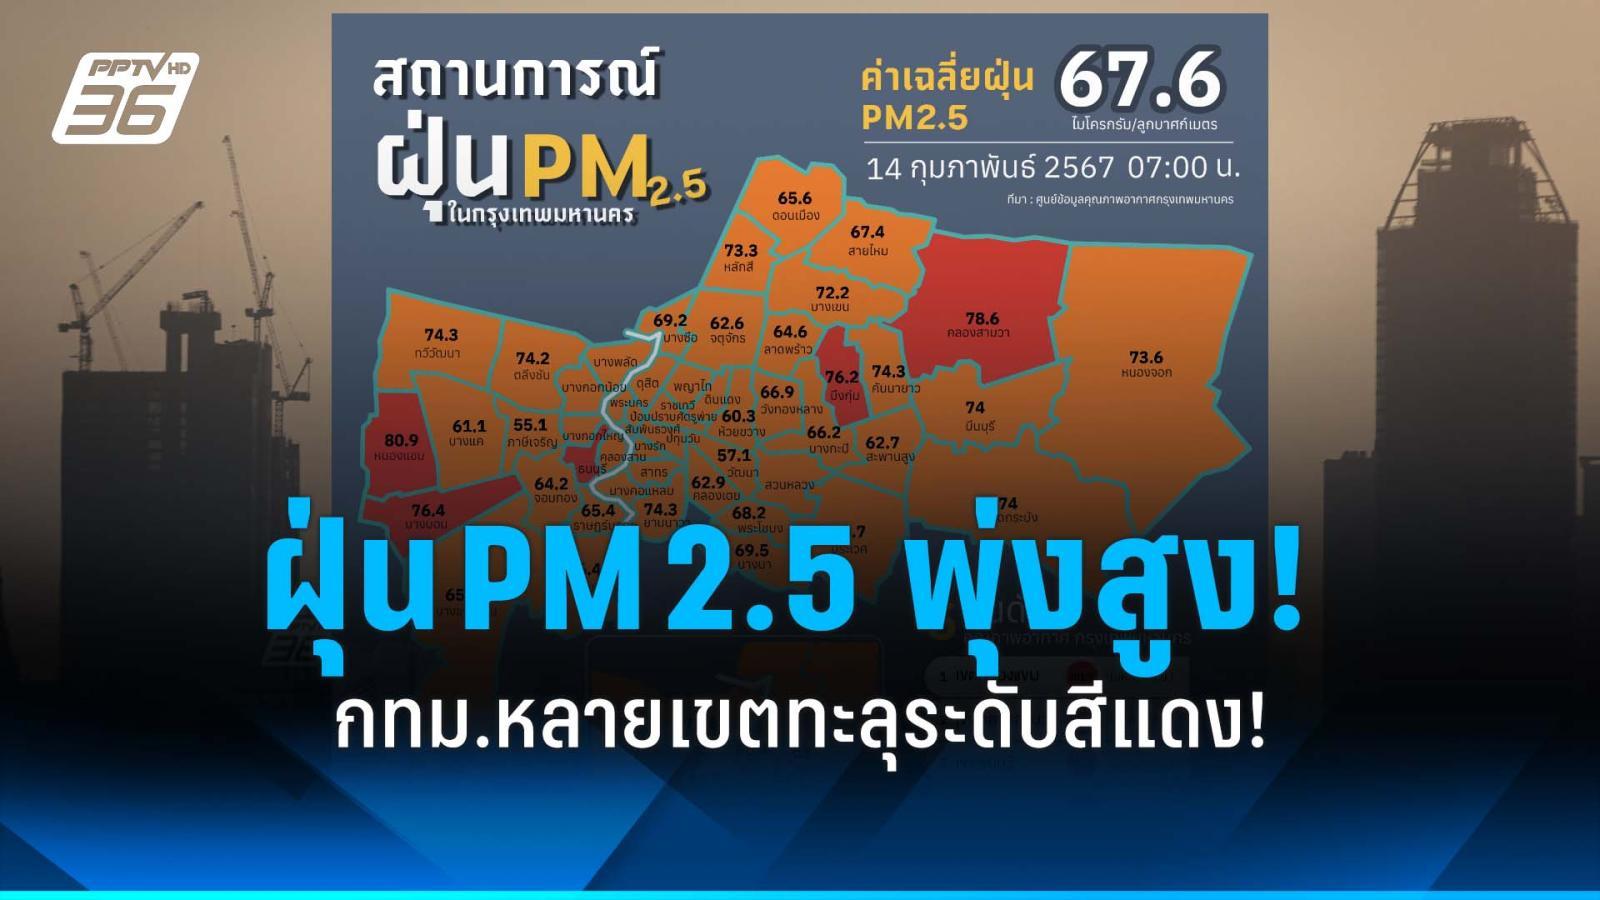 ค่าฝุ่น pm 2.5 กทม.พุ่งสูง! หลายเขตทะลุระดับสีแดง มีผลต่อสุขภาพ